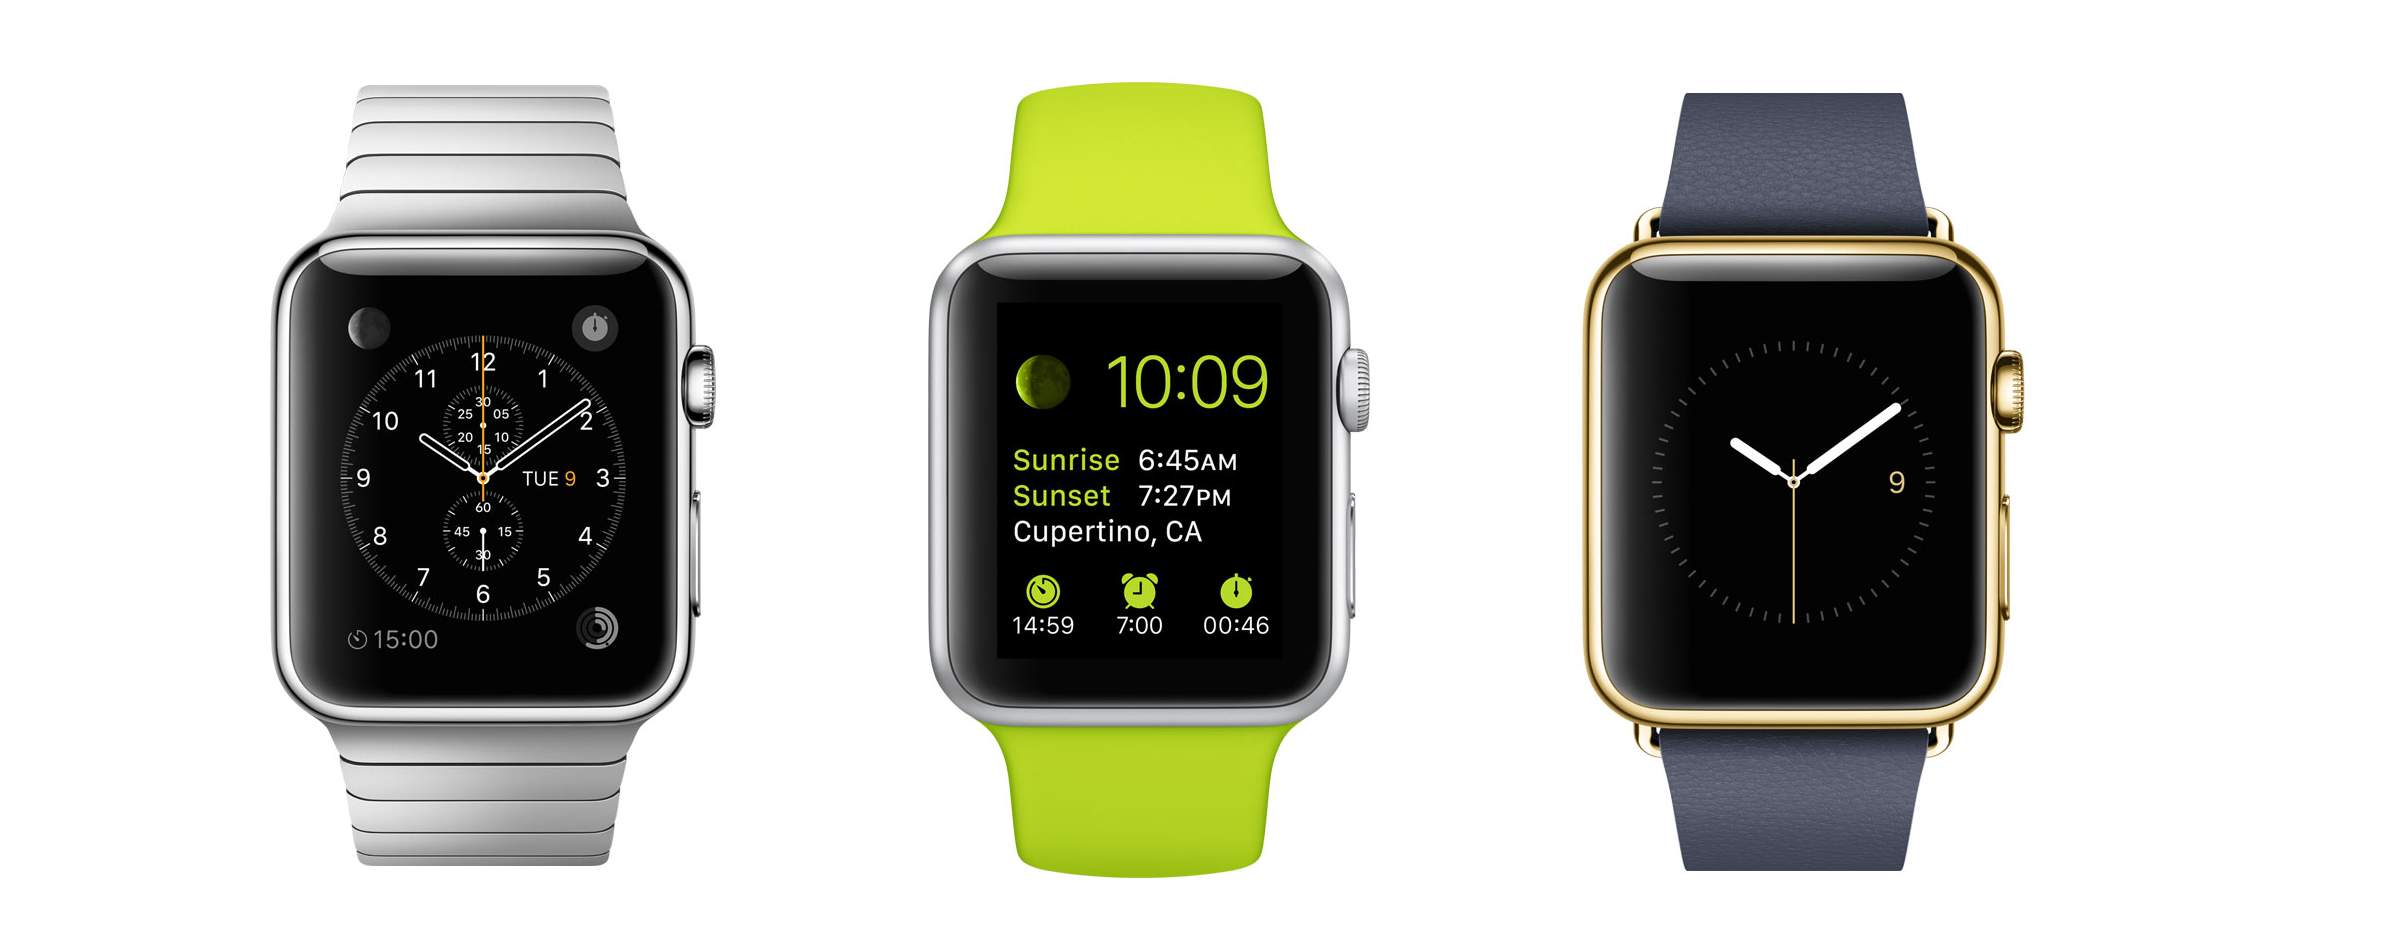 Apple Watch: tous les détails #11